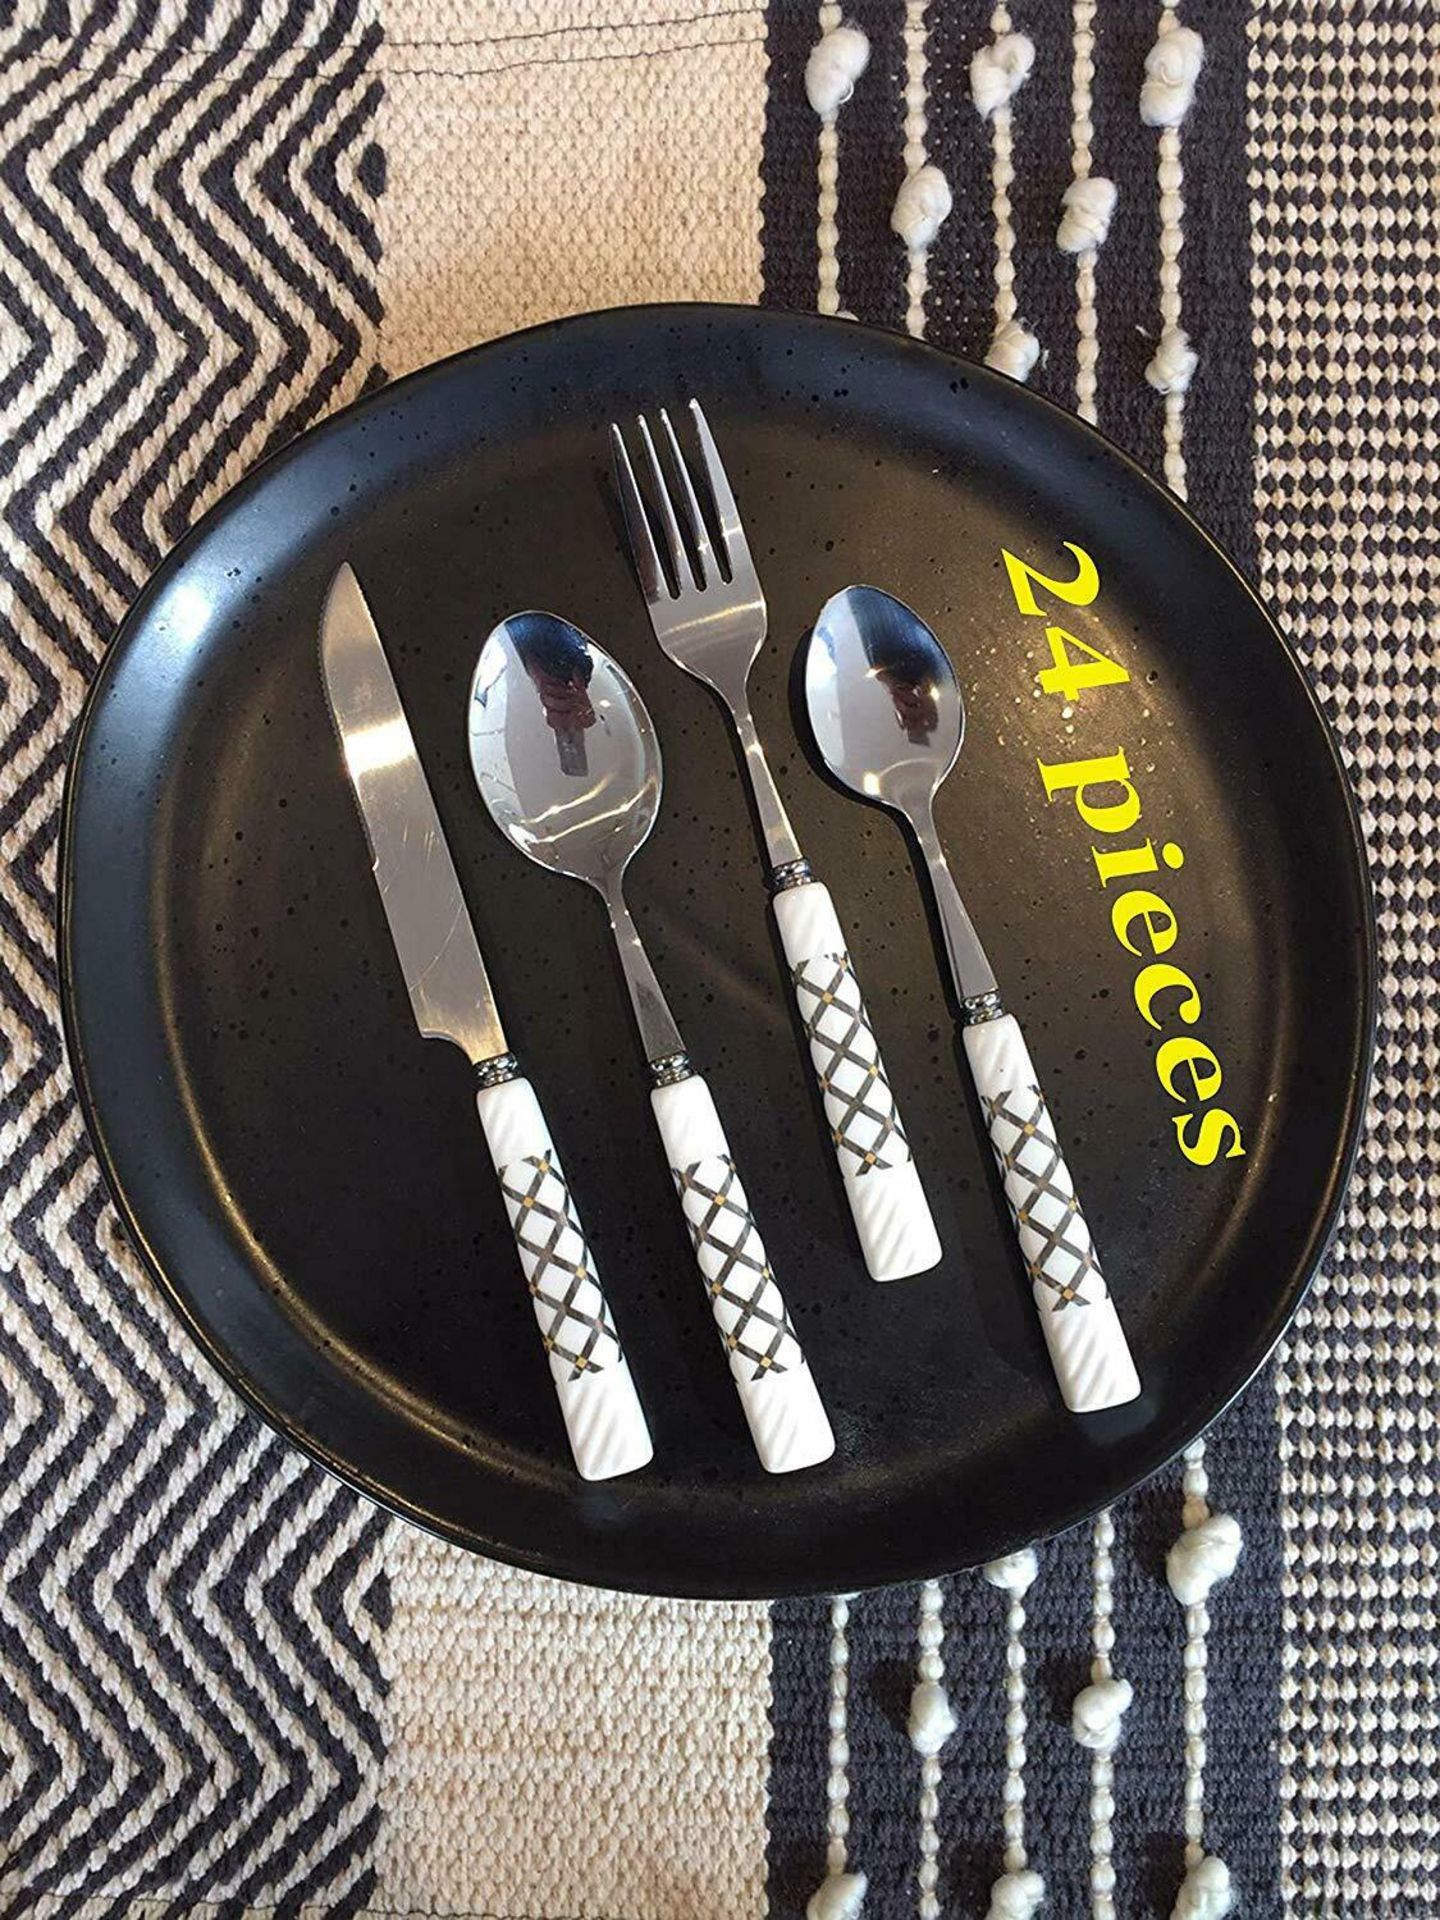 LENKON Cutlery Set,Tableware 24 Piece Stainless Steel Flatware,Silverware Set - Image 3 of 7